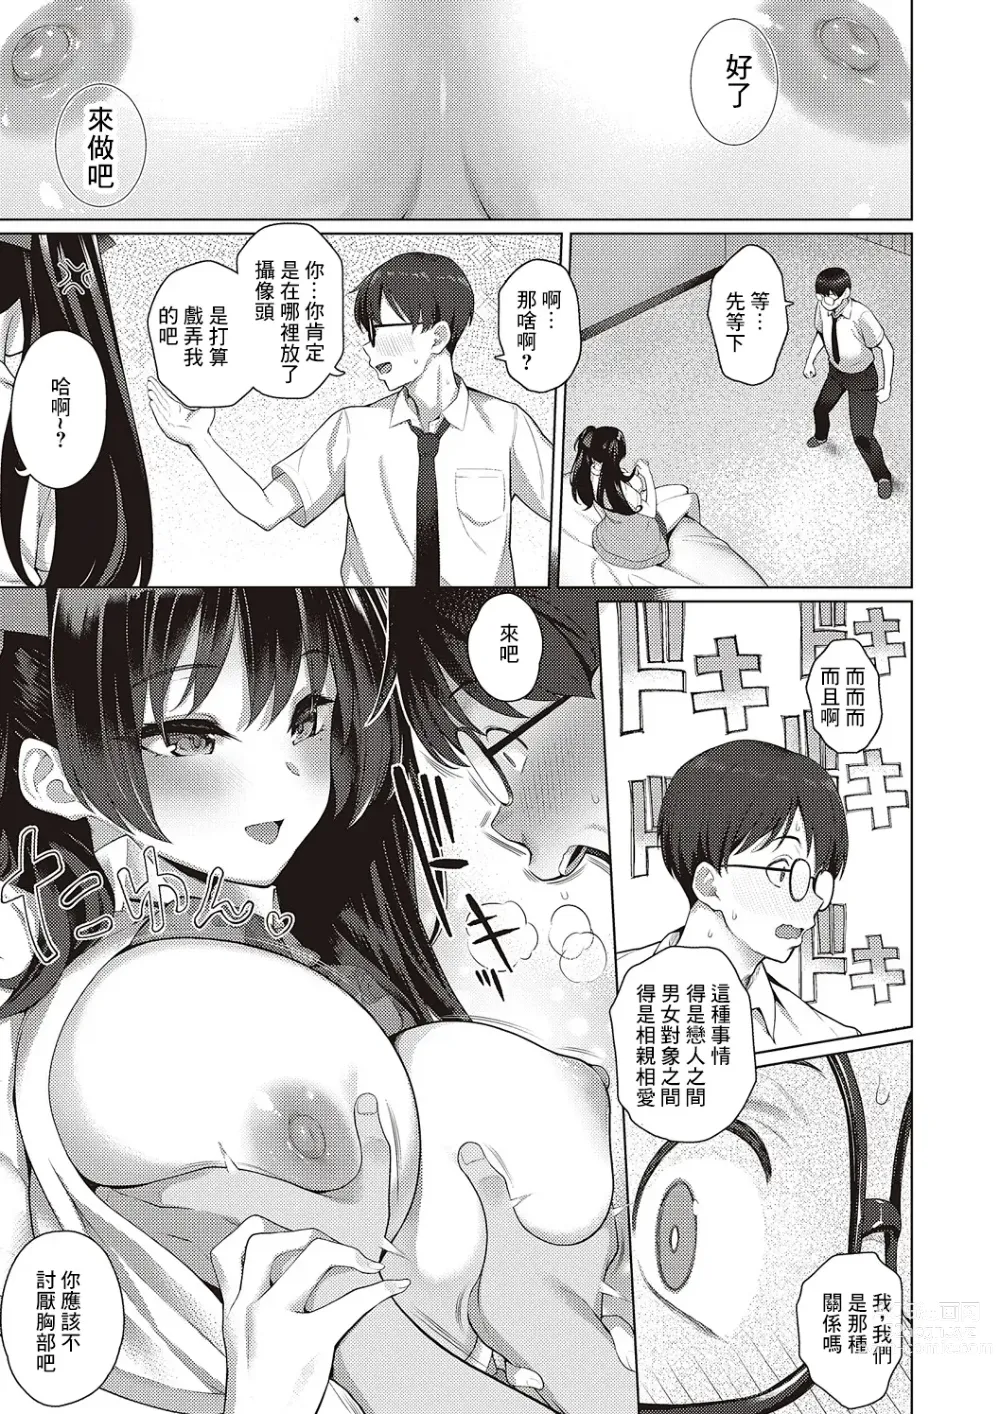 Page 15 of manga Majime to Fumajime